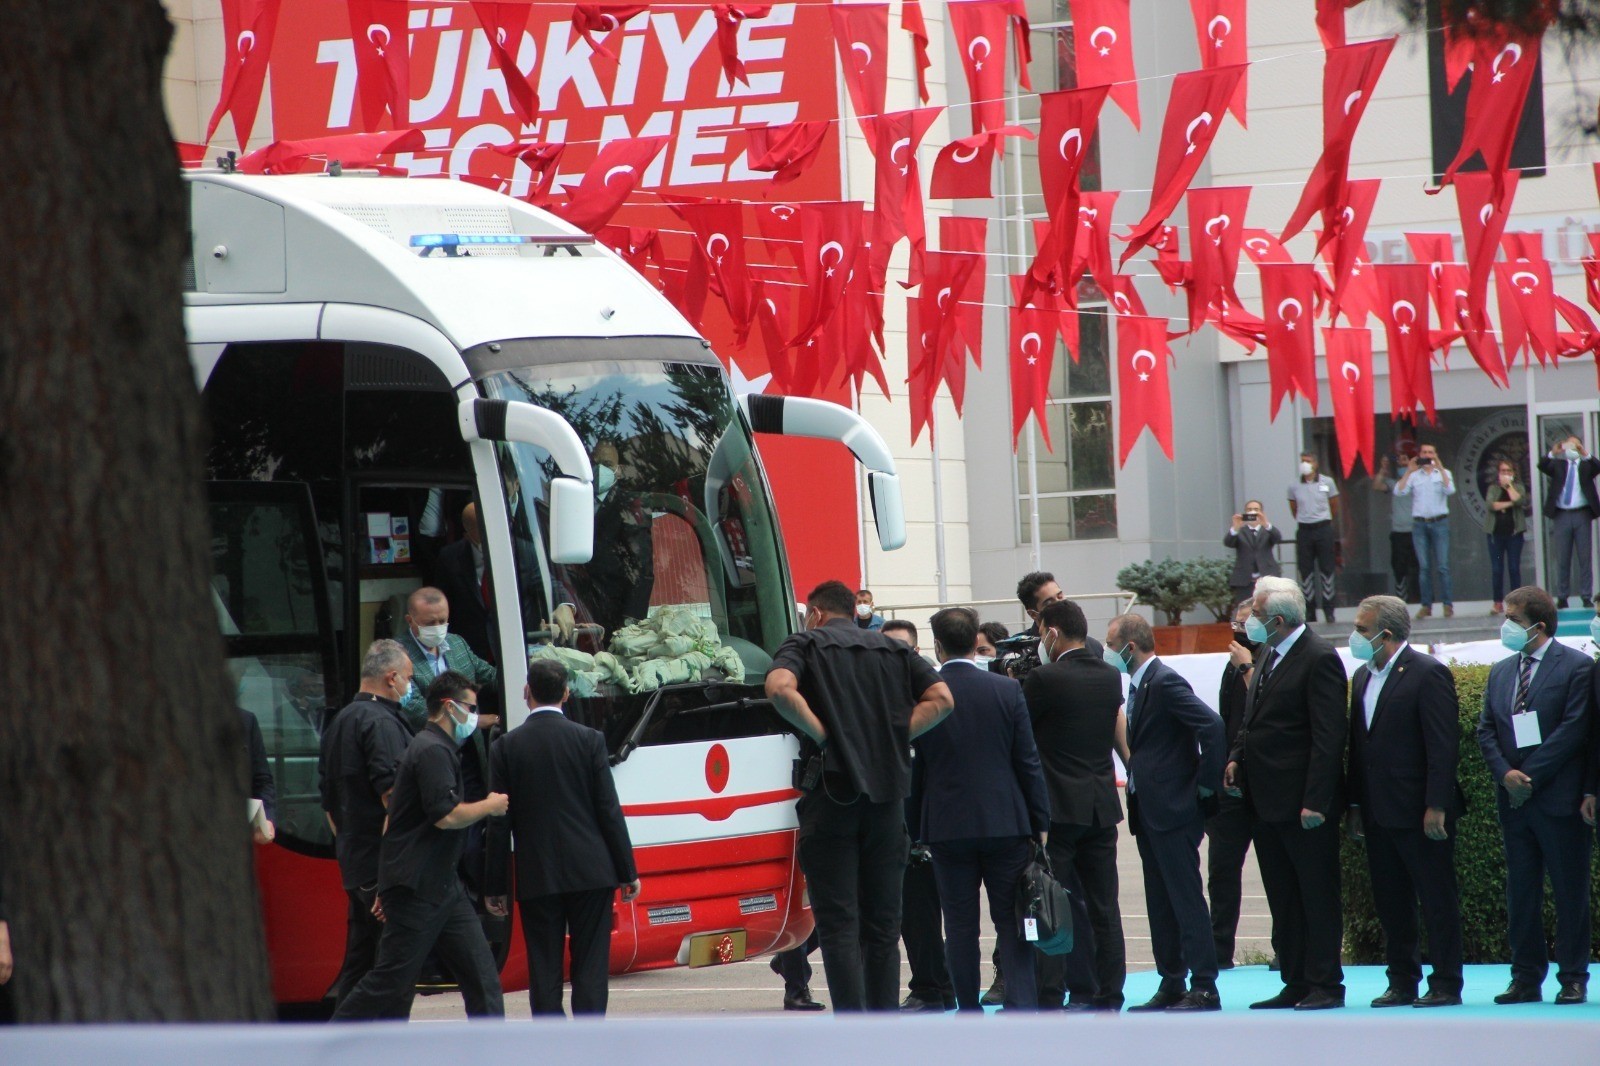 Cumhurbaşkanı Erdoğan: “Hep milletimizle beraber yürüdük, bundan sonra da milletimizin gösterdiği istikamette yürümekte kararlıyız”